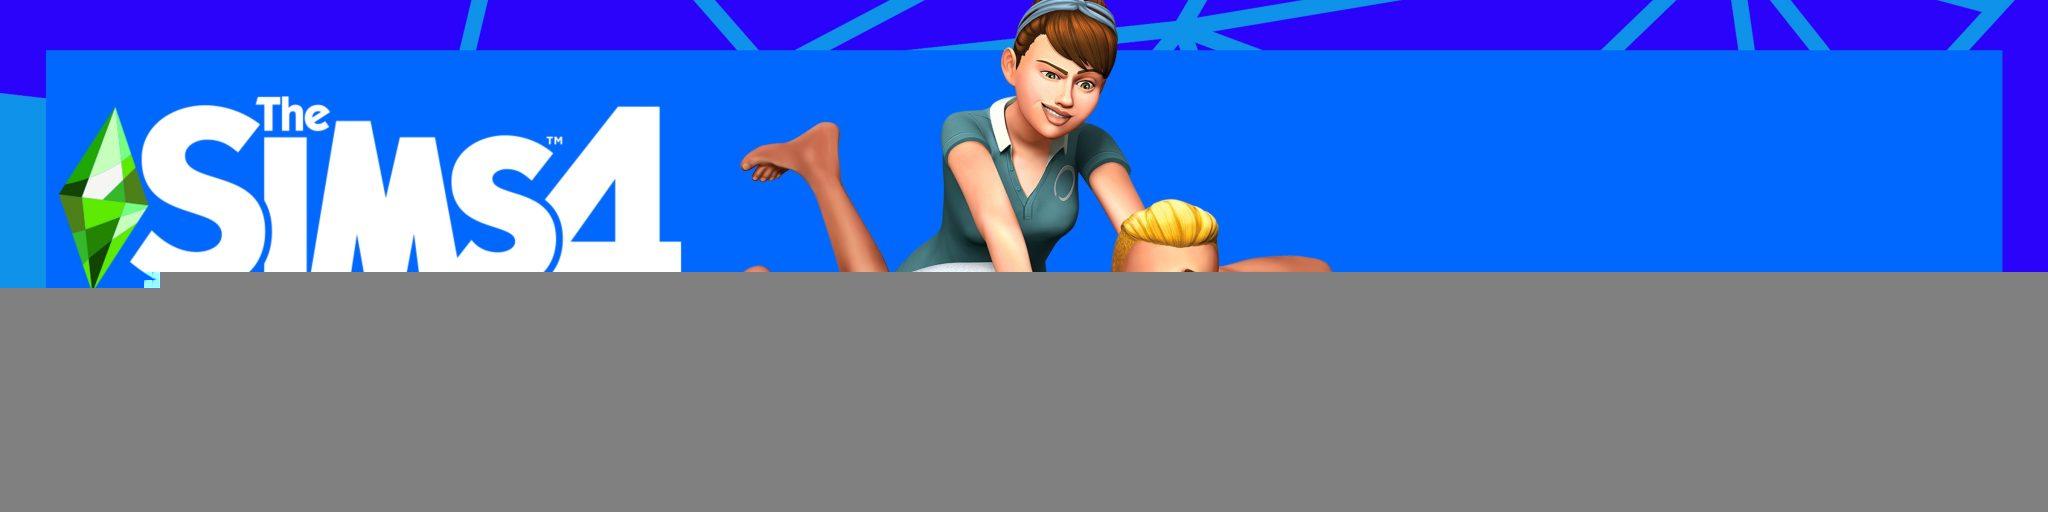 The Sims 4 Dia de SPA 